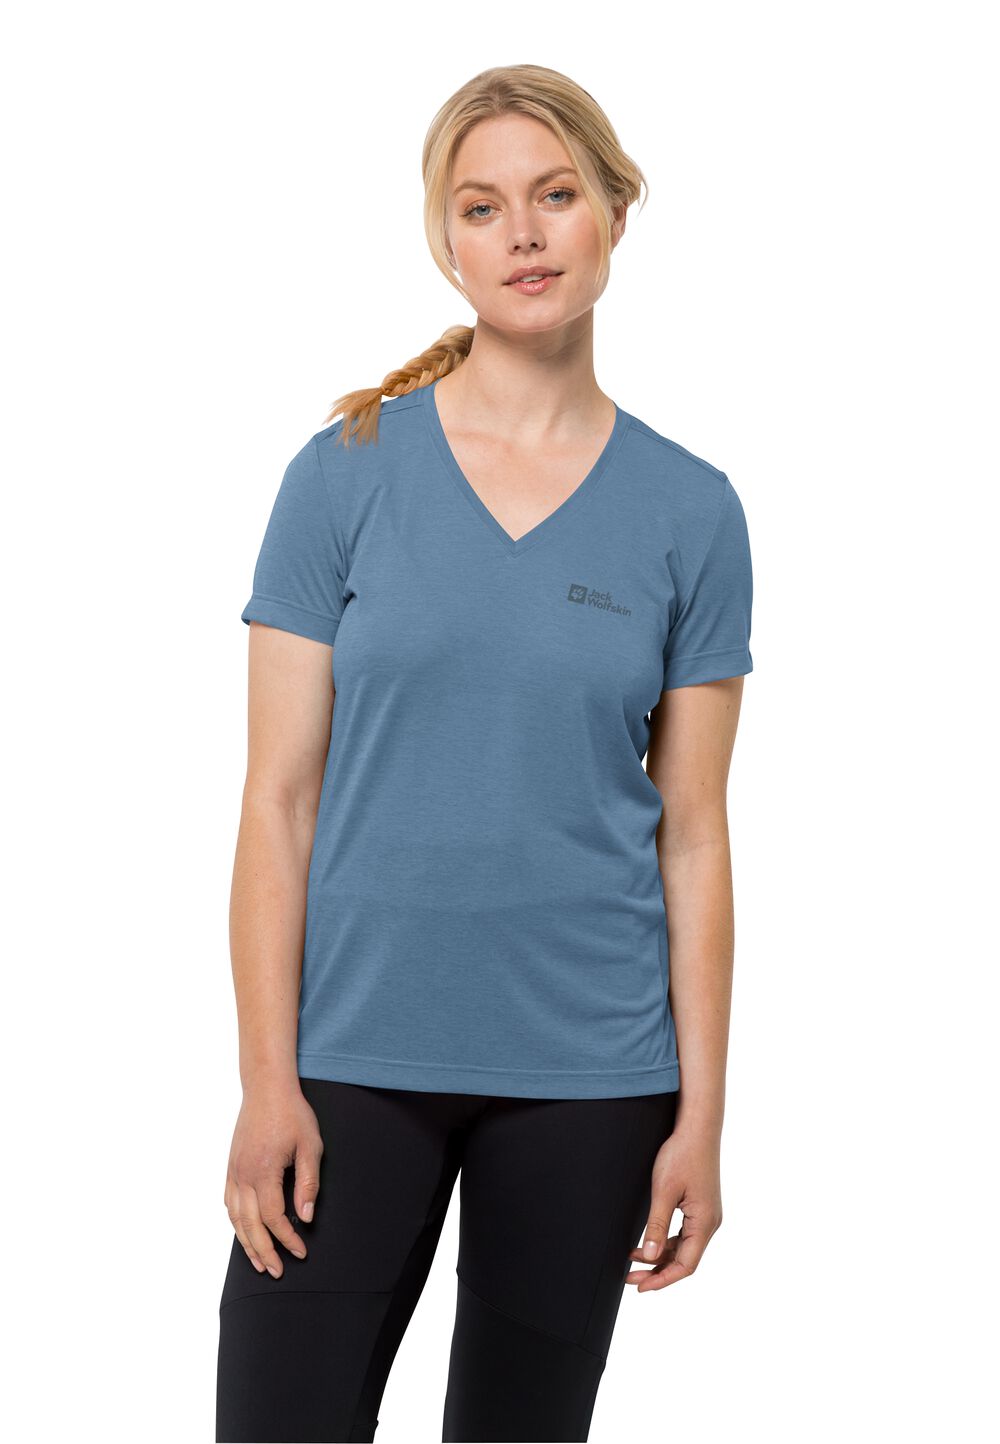 Jack Wolfskin Crosstrail T-Shirt Women Functioneel shirt Dames S elemental blue elemental blue